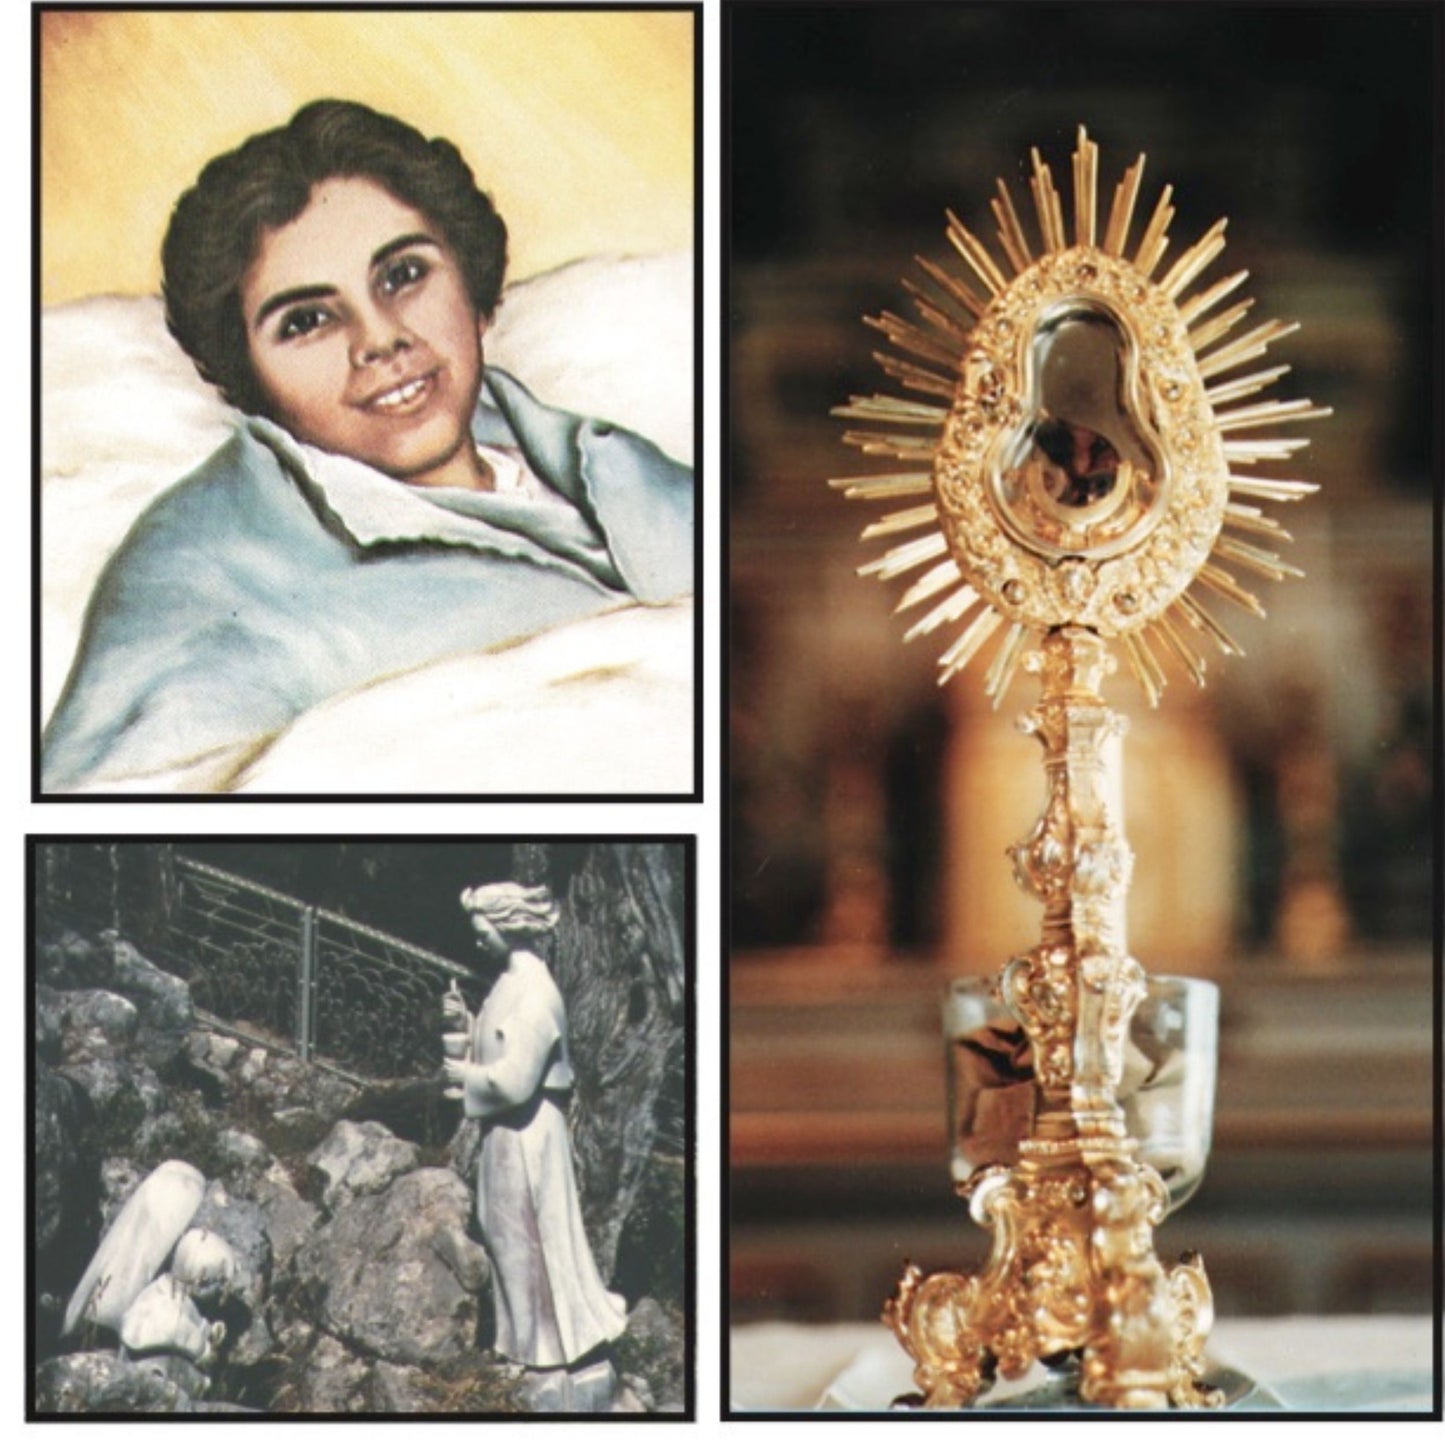 Milagros de la Eucaristía de Portugal, Santarem, Alexandrina da Costa, y Angel de Fátima - Bob and Penny Lord